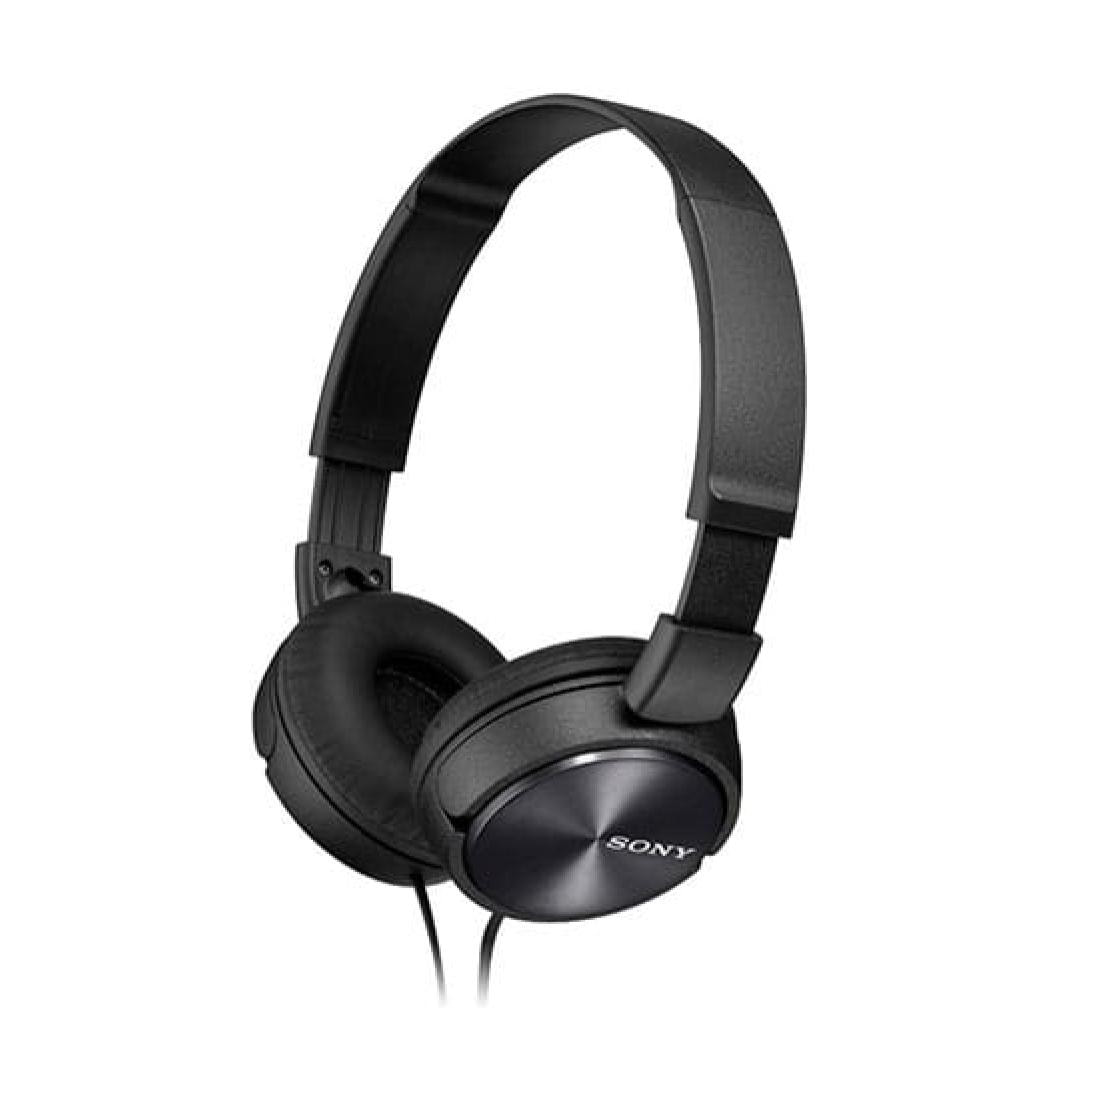  Sony Auriculares estéreo con cancelación de ruido con cable  (negro) + conversor de conector NeeGo de 0.138 in para iPhone : Electrónica